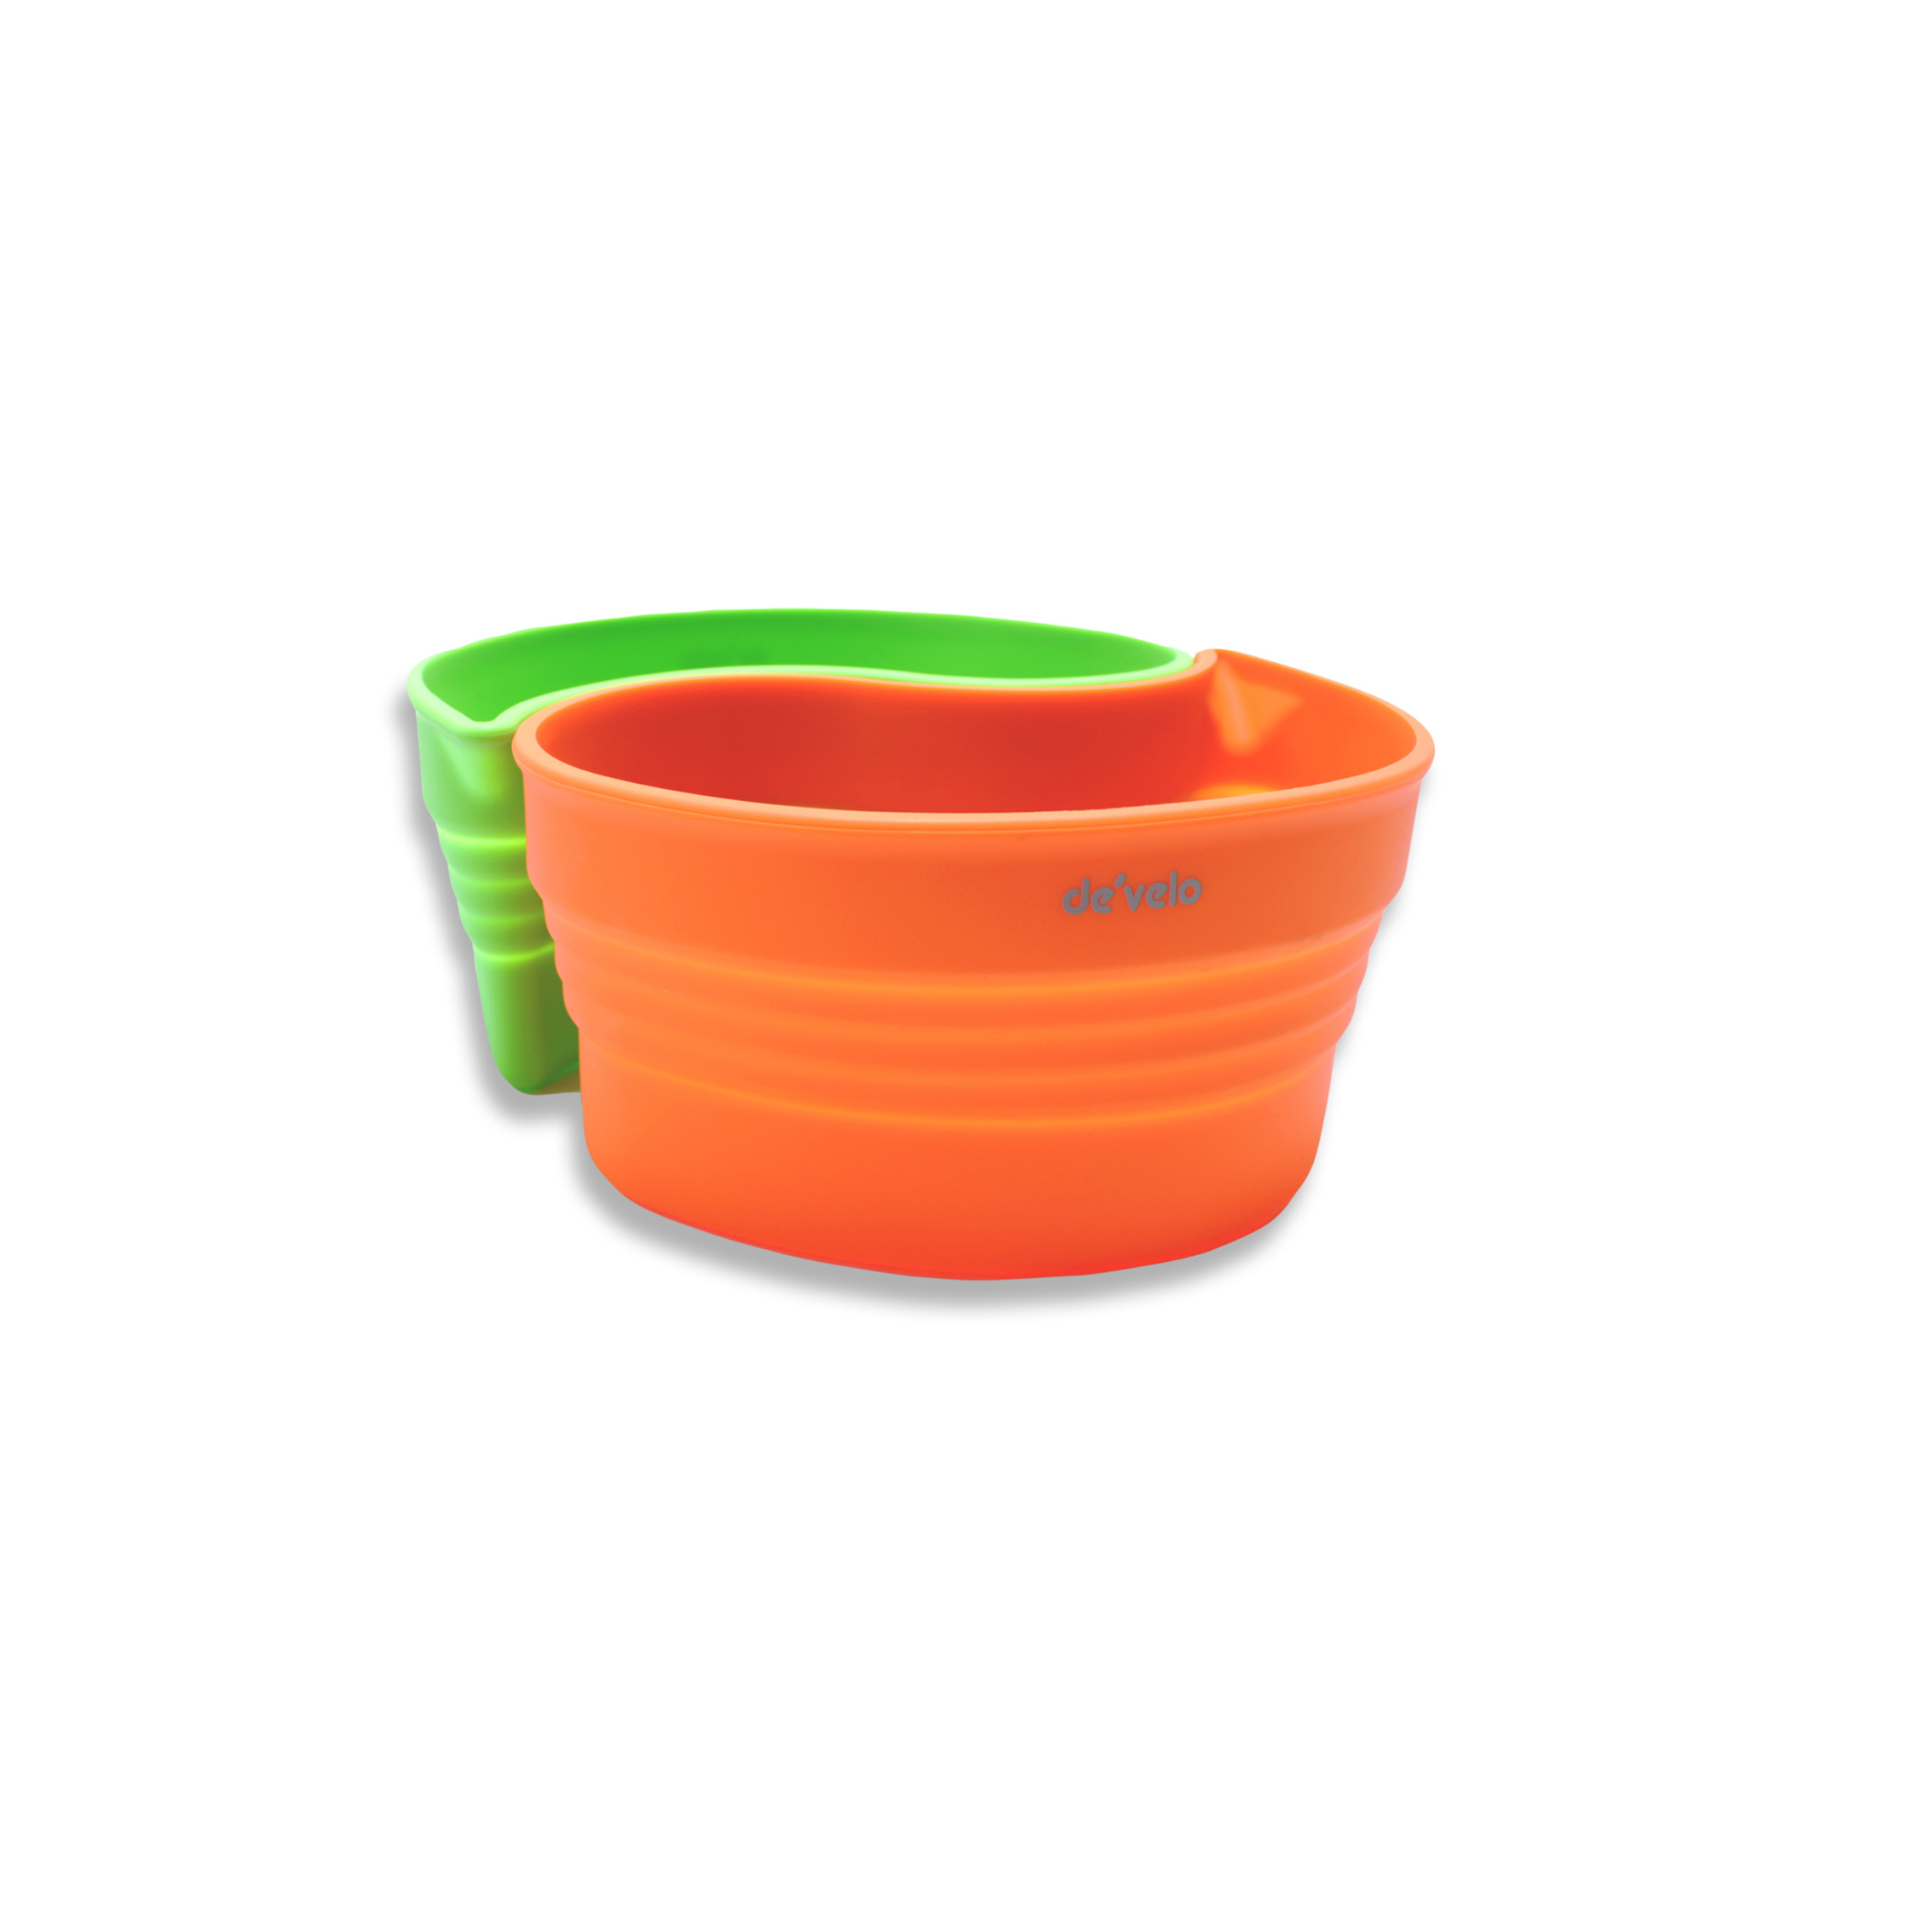 Crock-Pot Insert 2-Piece – Develokitchenware